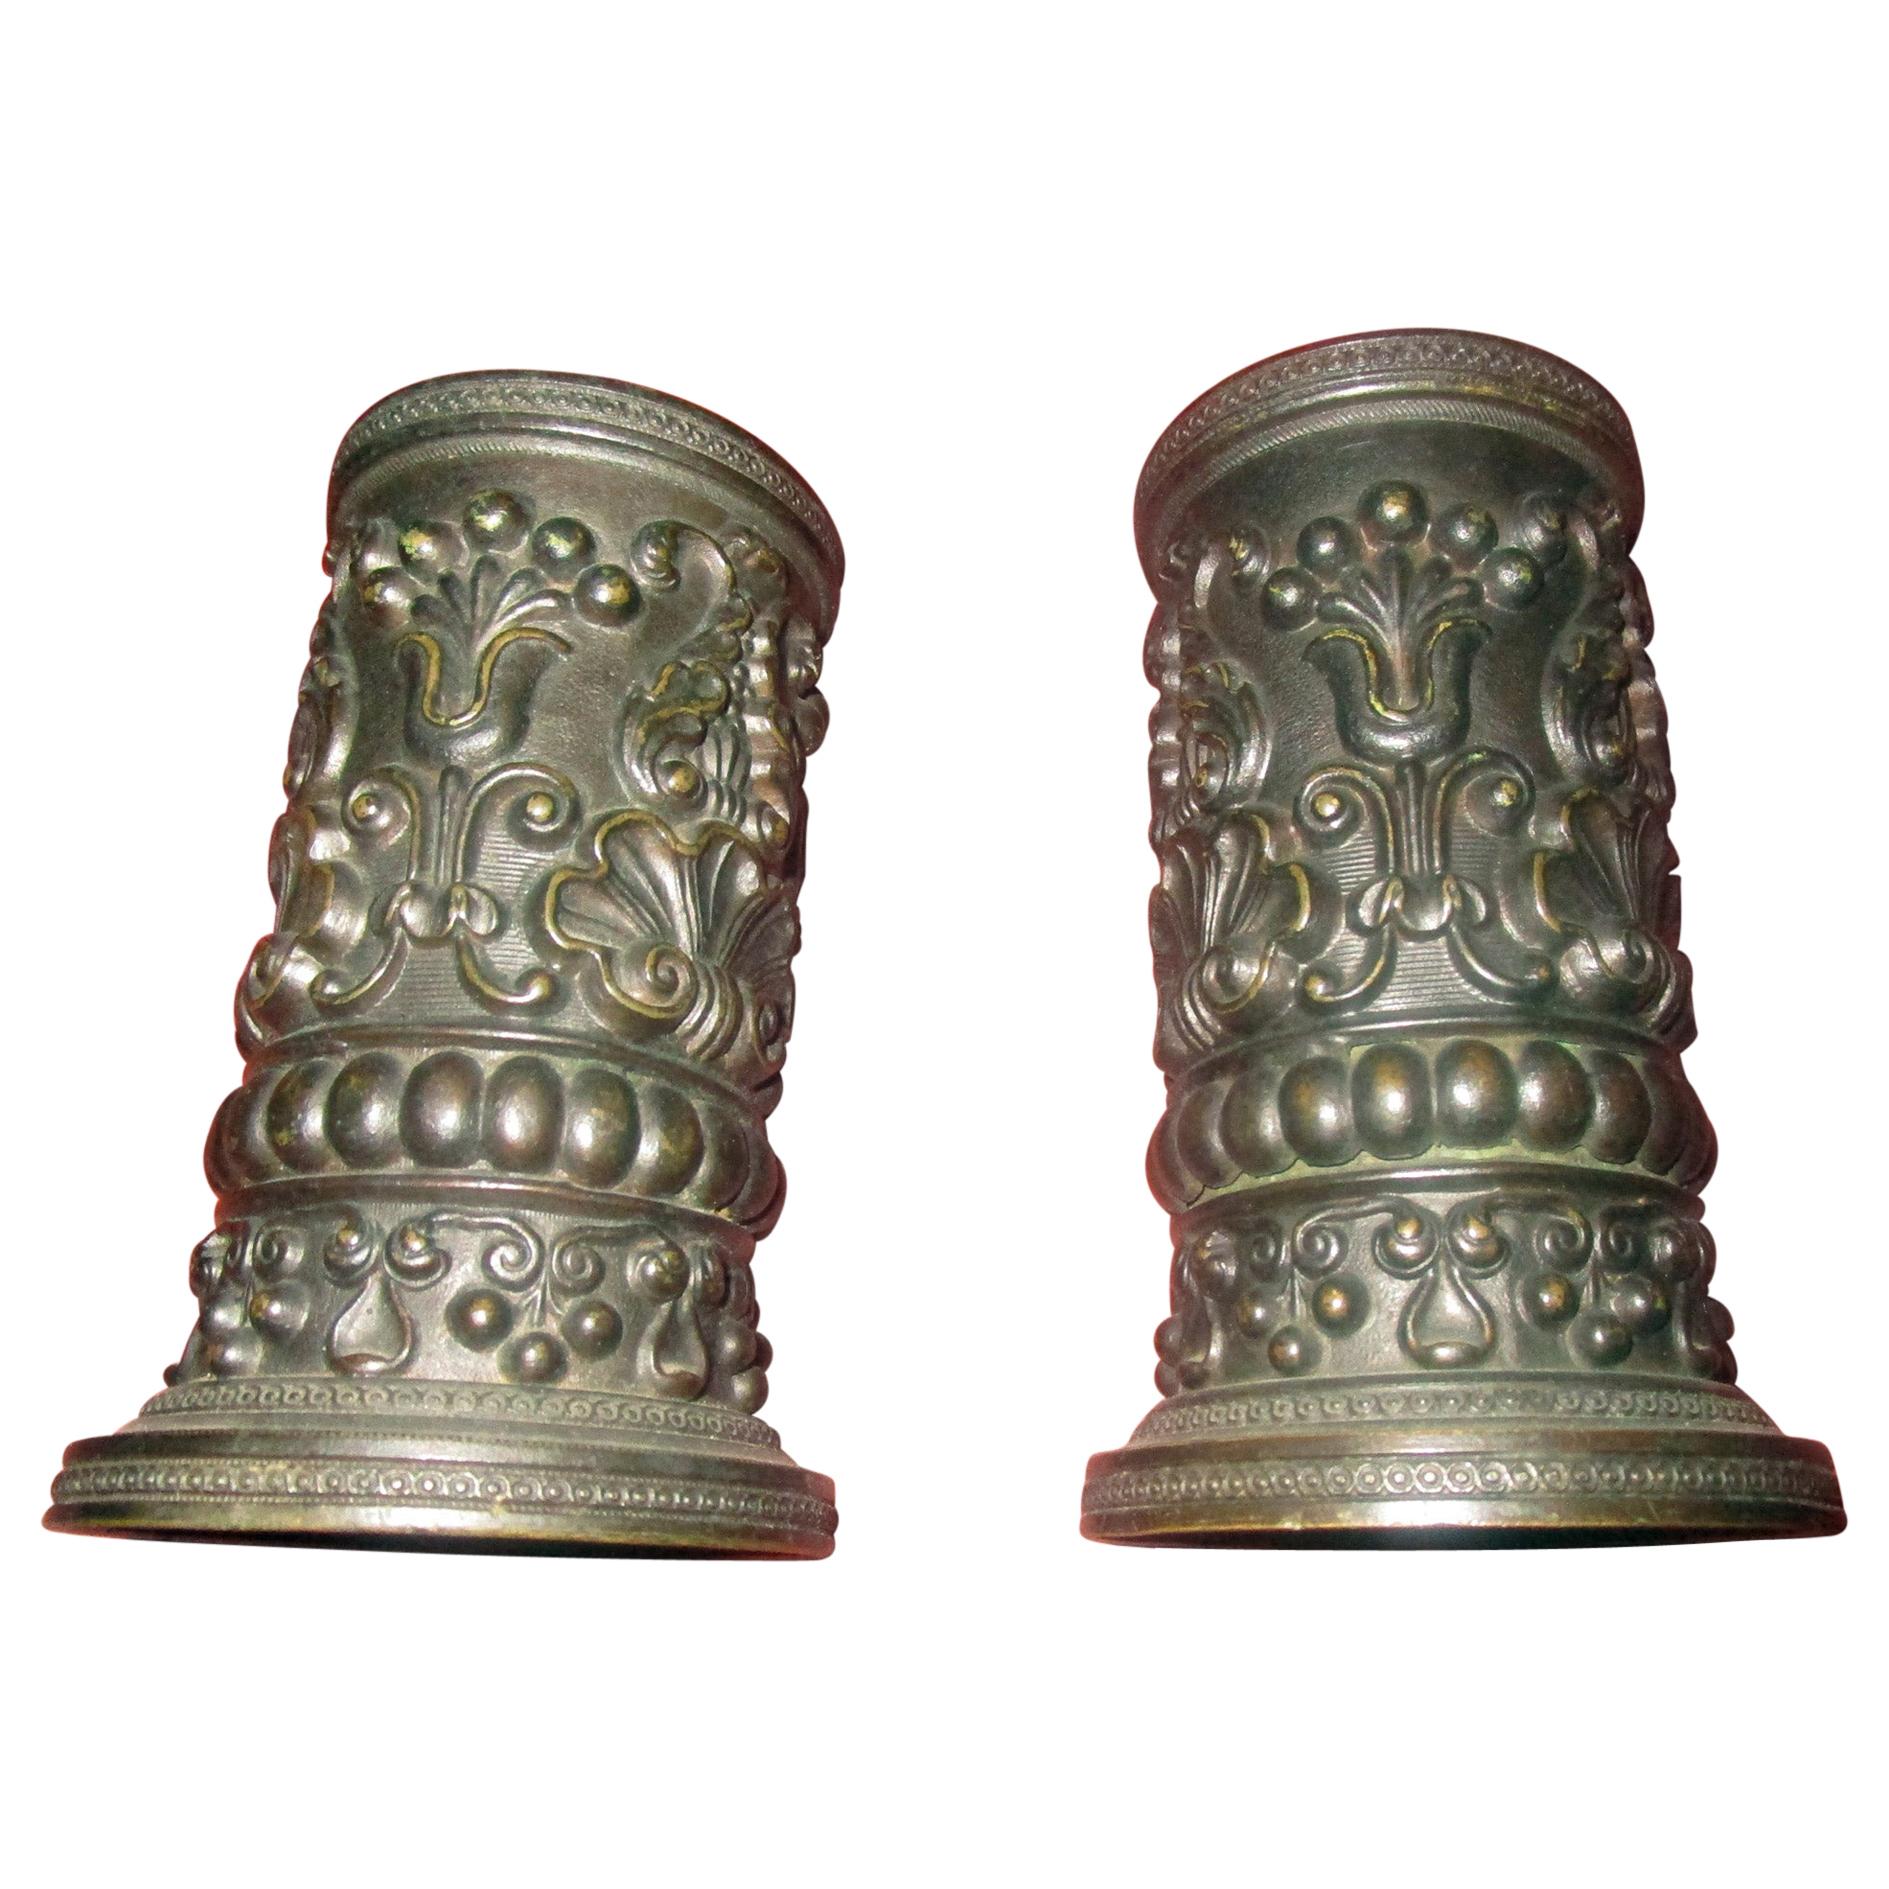 Englische Regency-Vasen aus Bronze des 19. Jahrhunderts